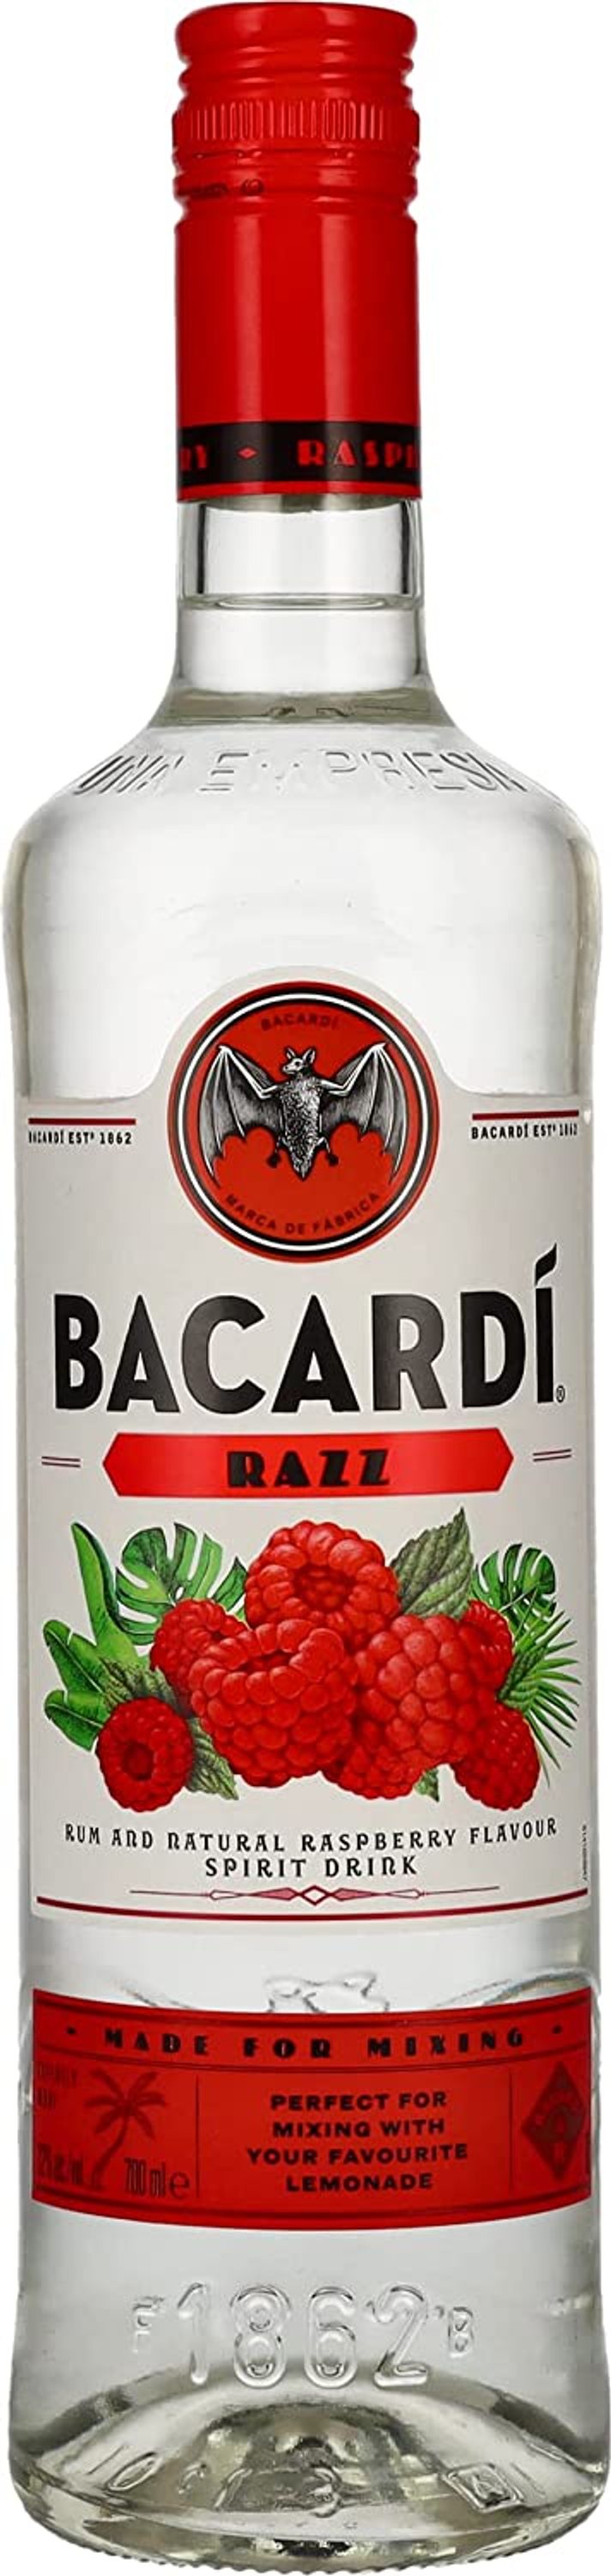 Bacardi Razz 0.7l, alc. 32% by volume